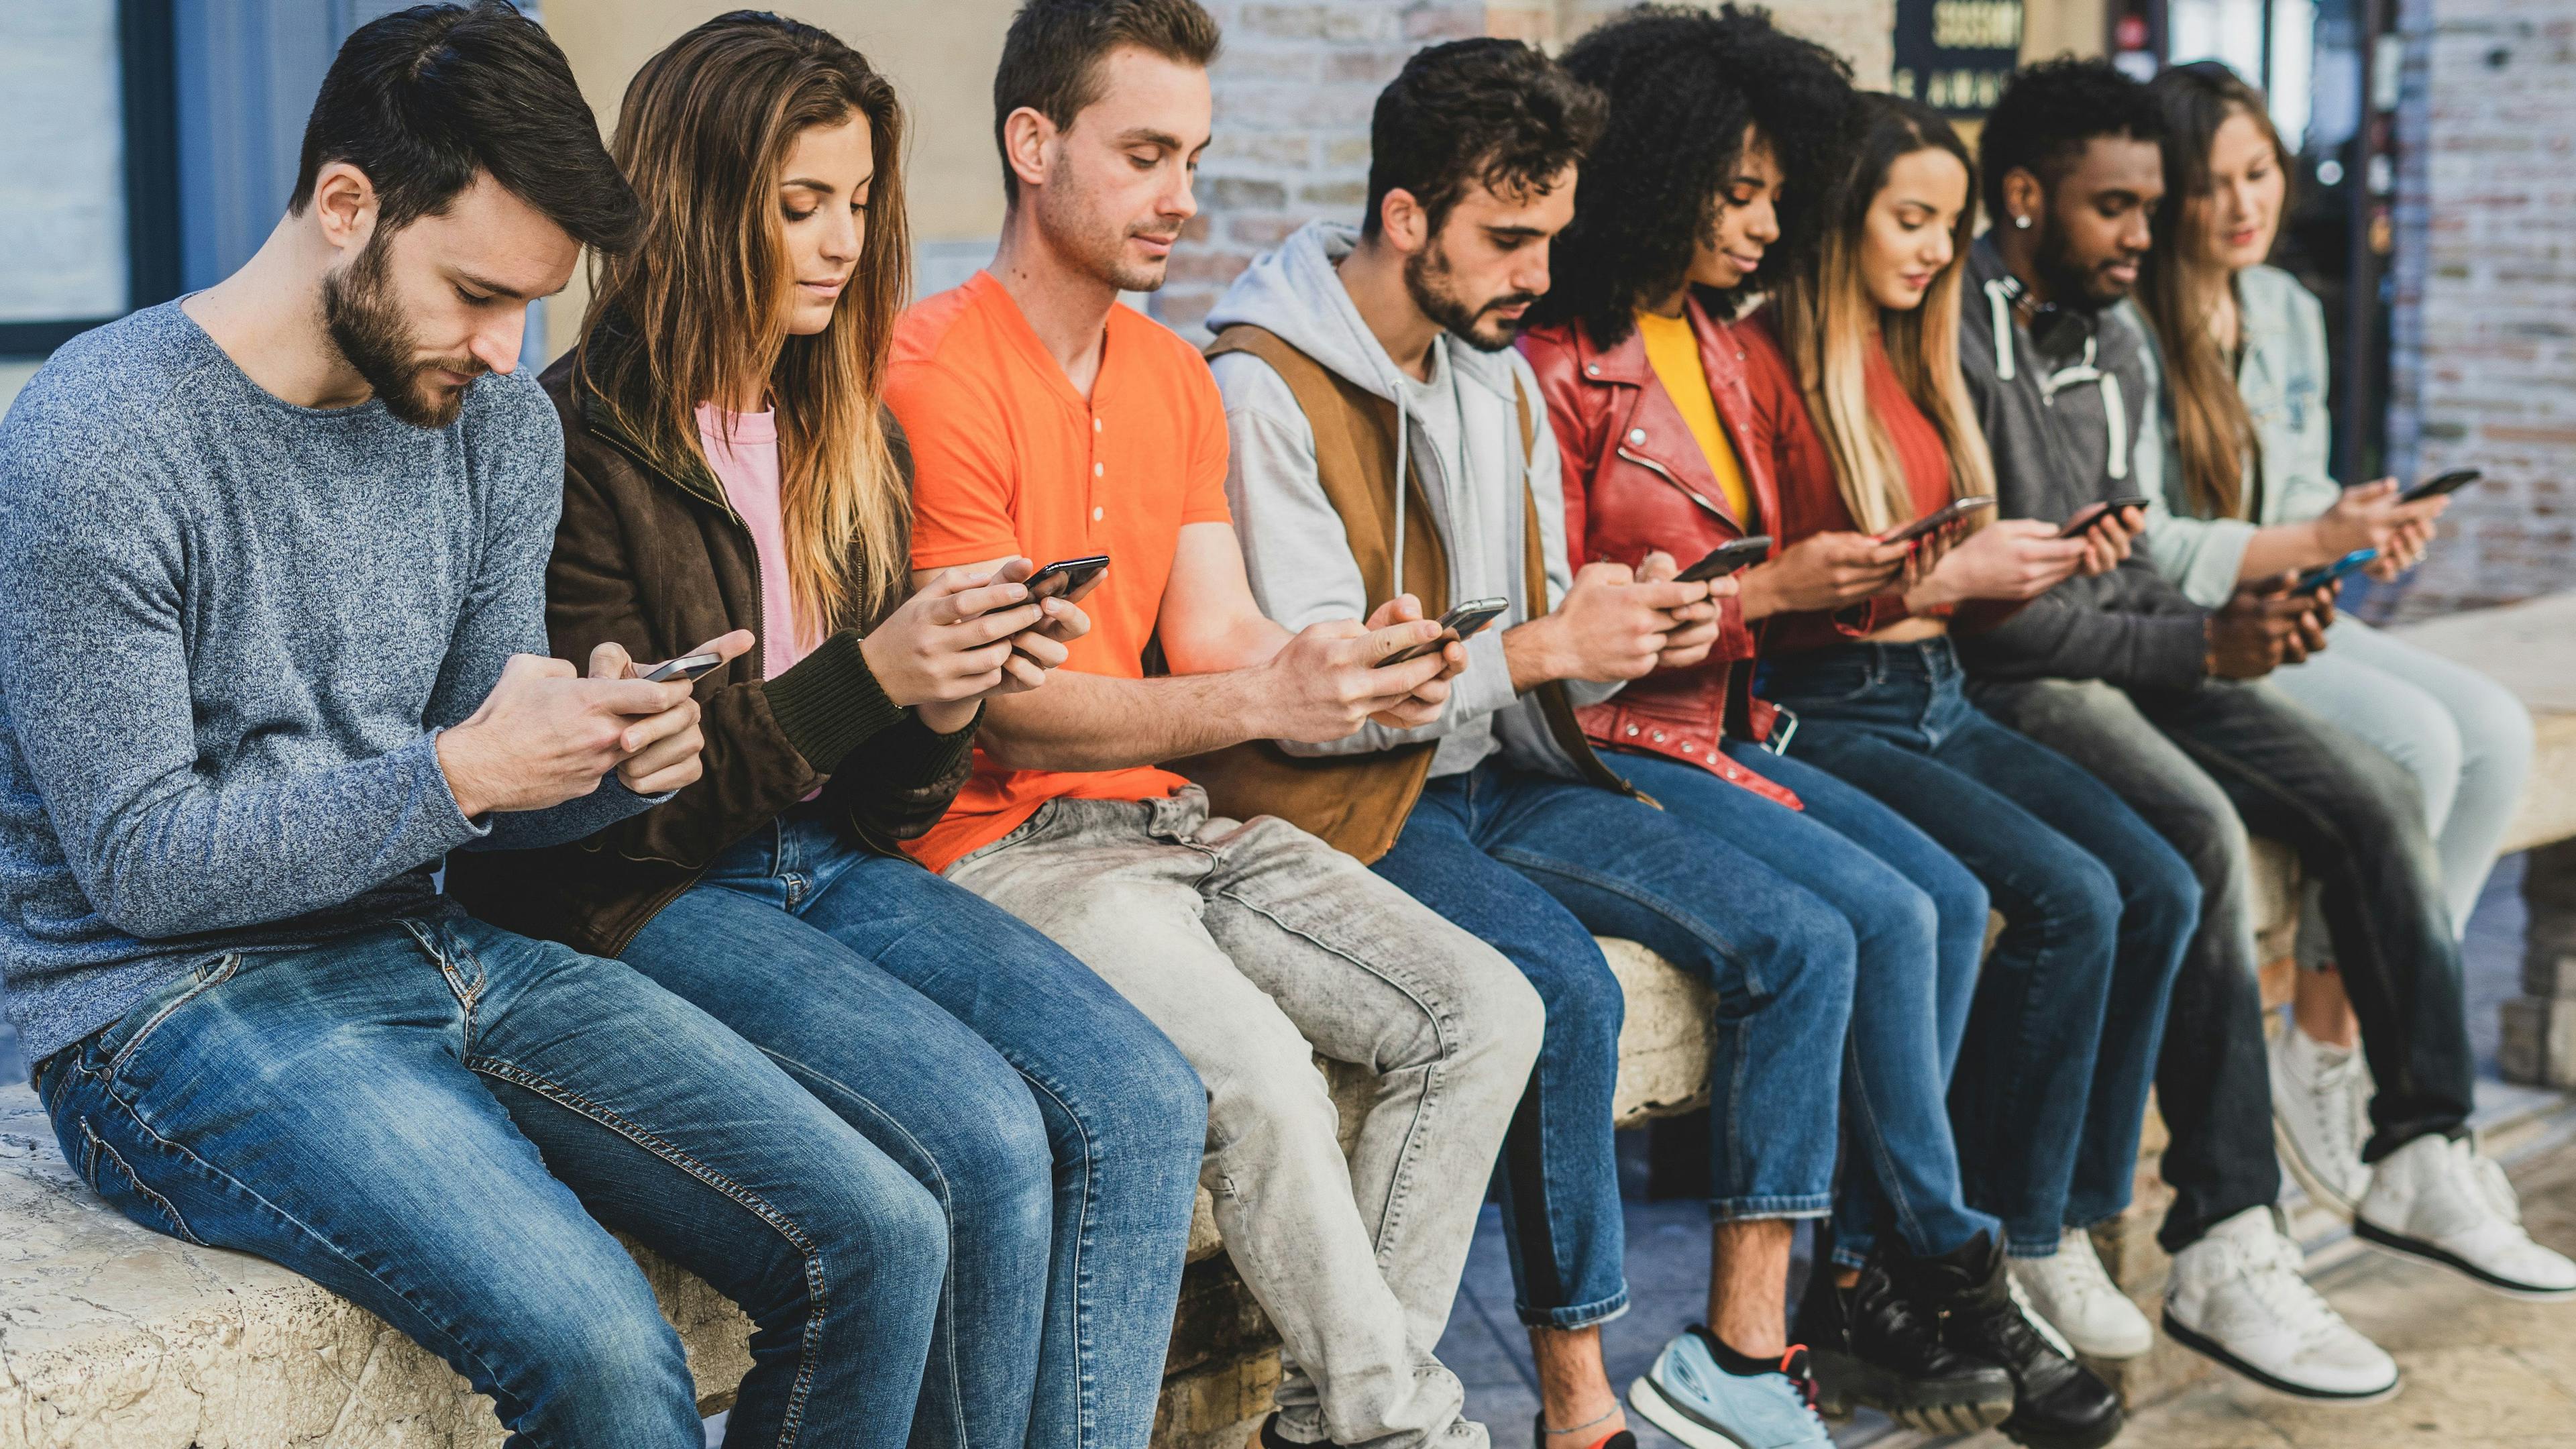 millennials on their phones